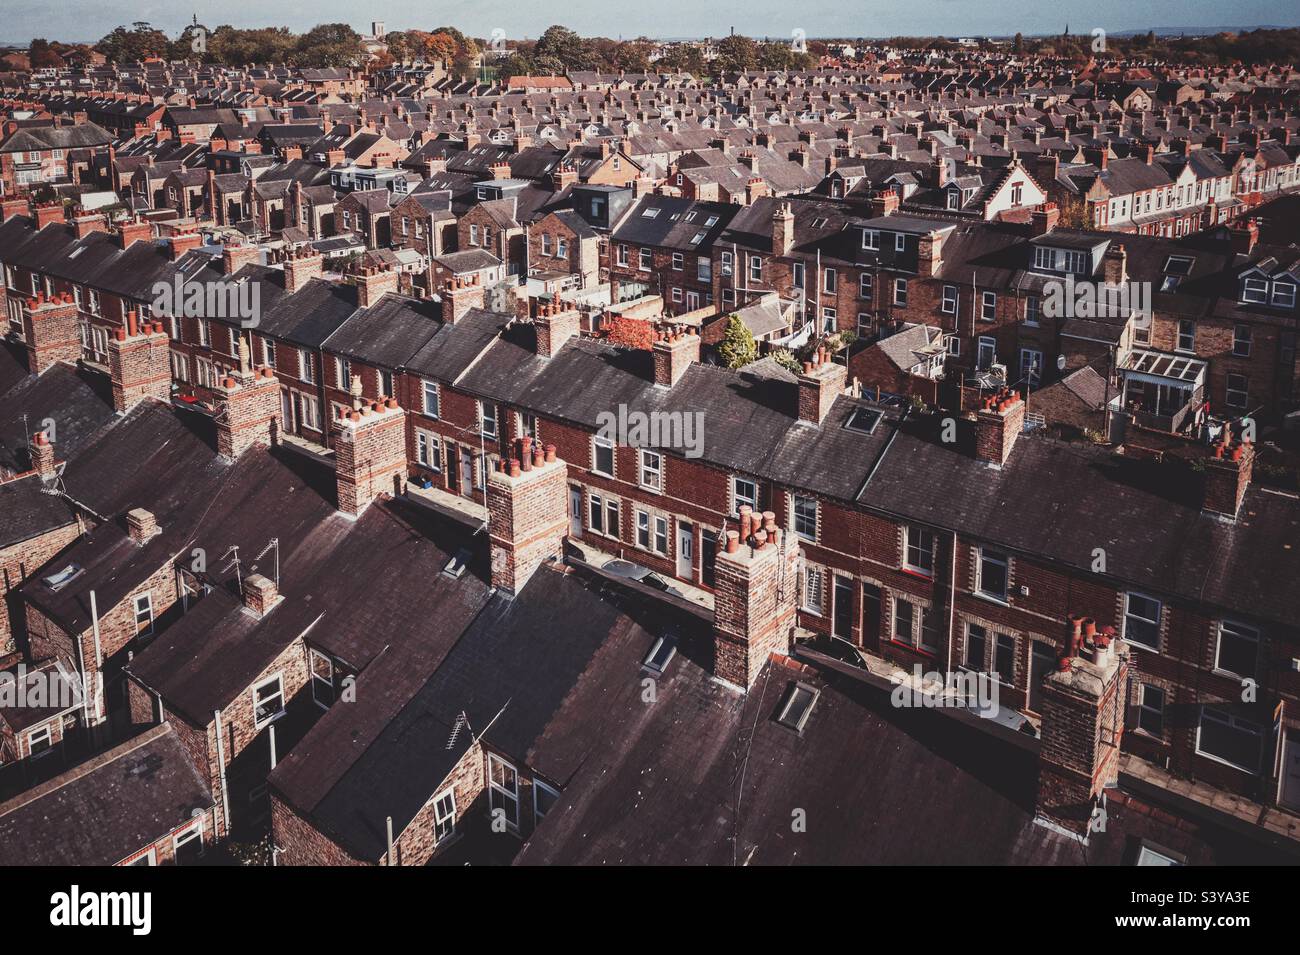 Vue aérienne de maisons mitoyennes dos à dos sur un grand domaine de logement en panne dans le nord de l'Angleterre pendant la promesse de nivellement par le gouvernement britannique Banque D'Images